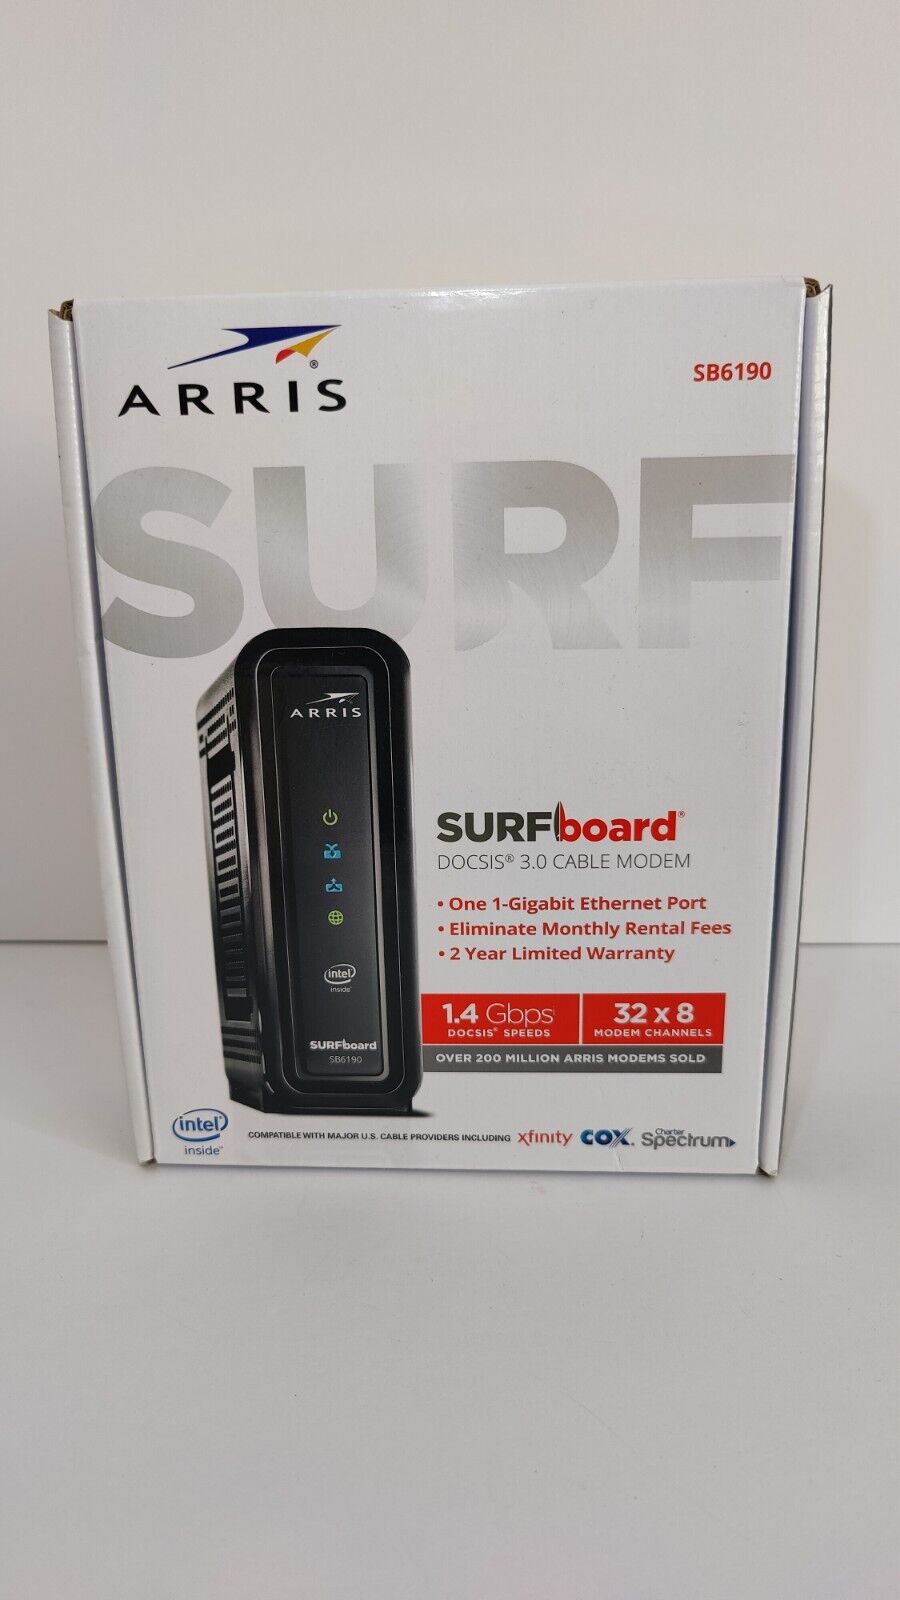 ARRIS SURFboard SB6190. DOCSIS 3.0 Cable Modem 32 x 8 Modem Channels 1Gbps 